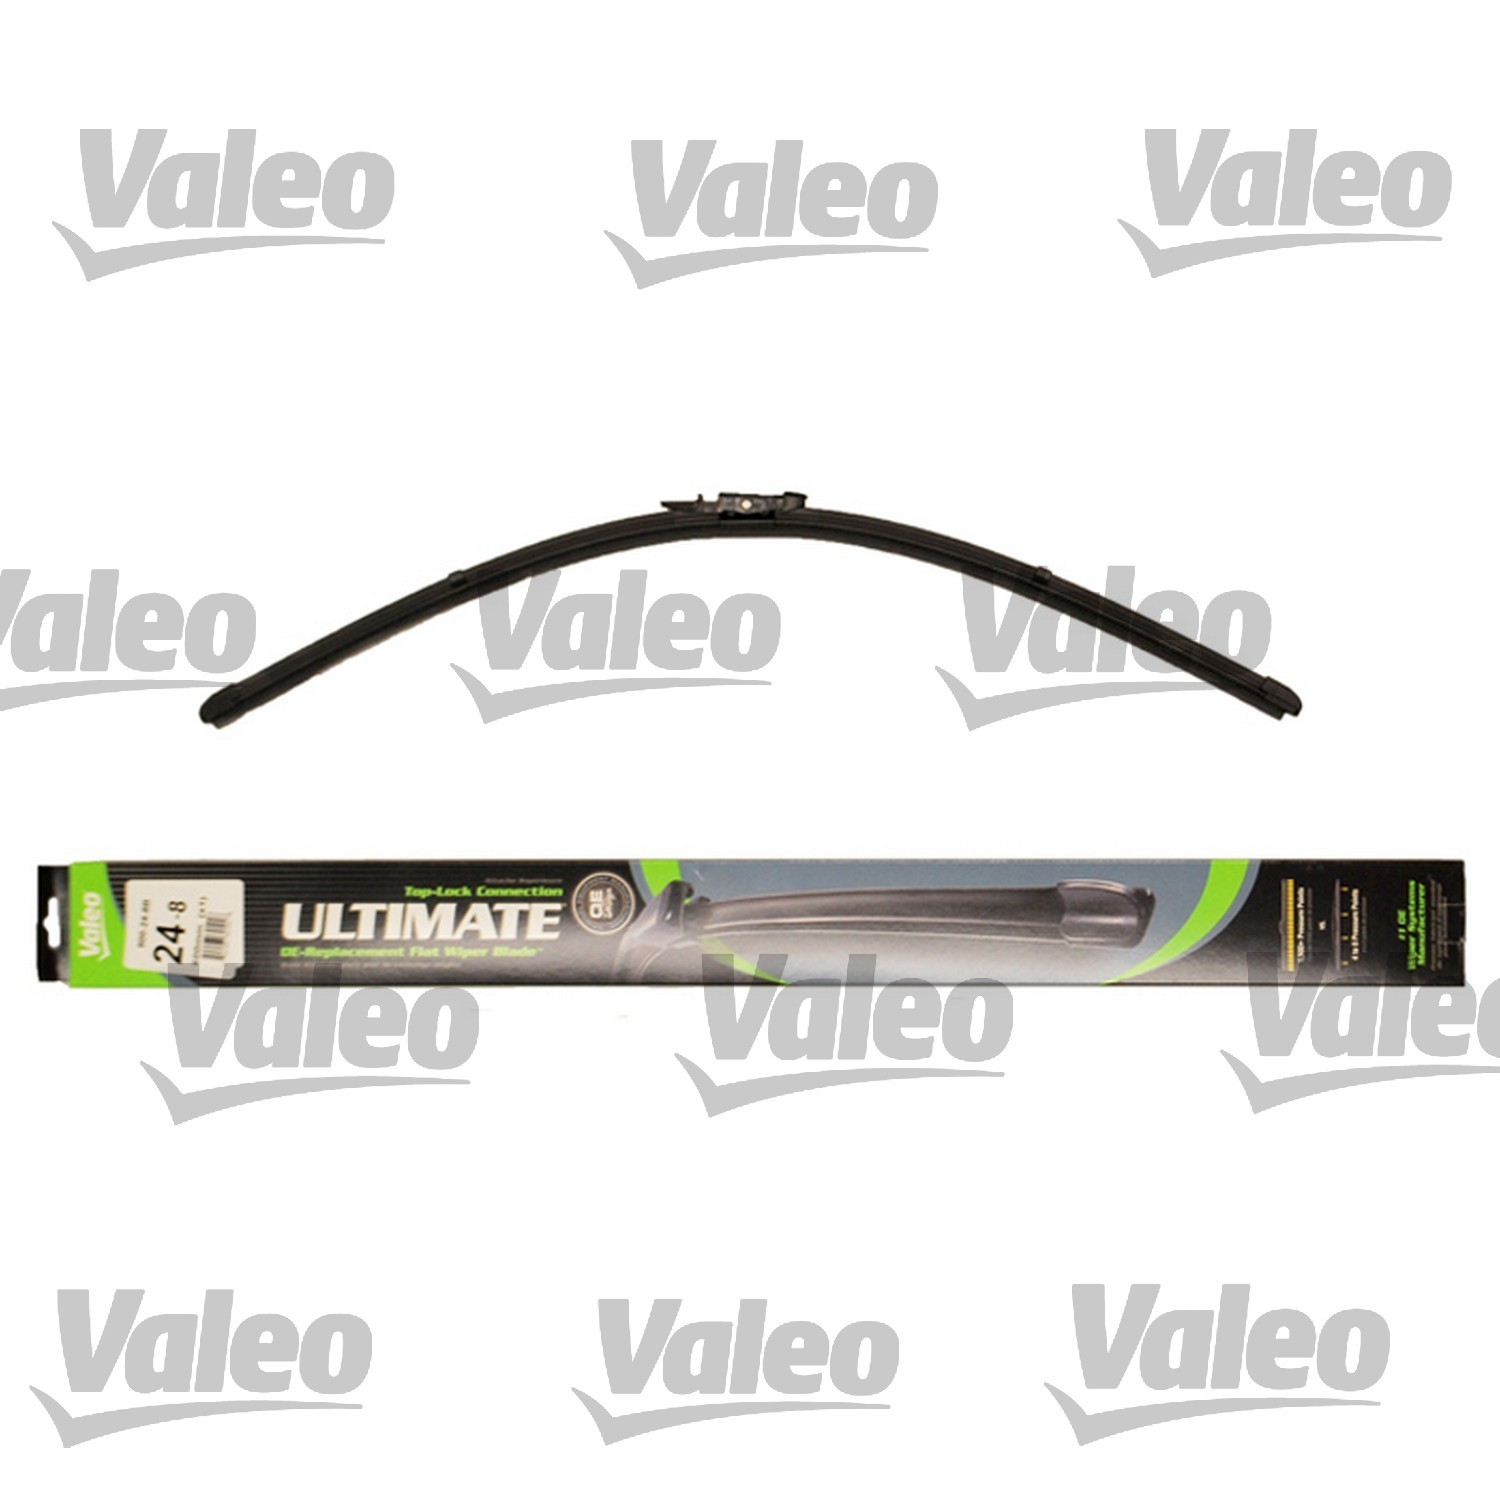 VALEO - Ultimate Wiper Blade Refill - VEO 900-24-8B